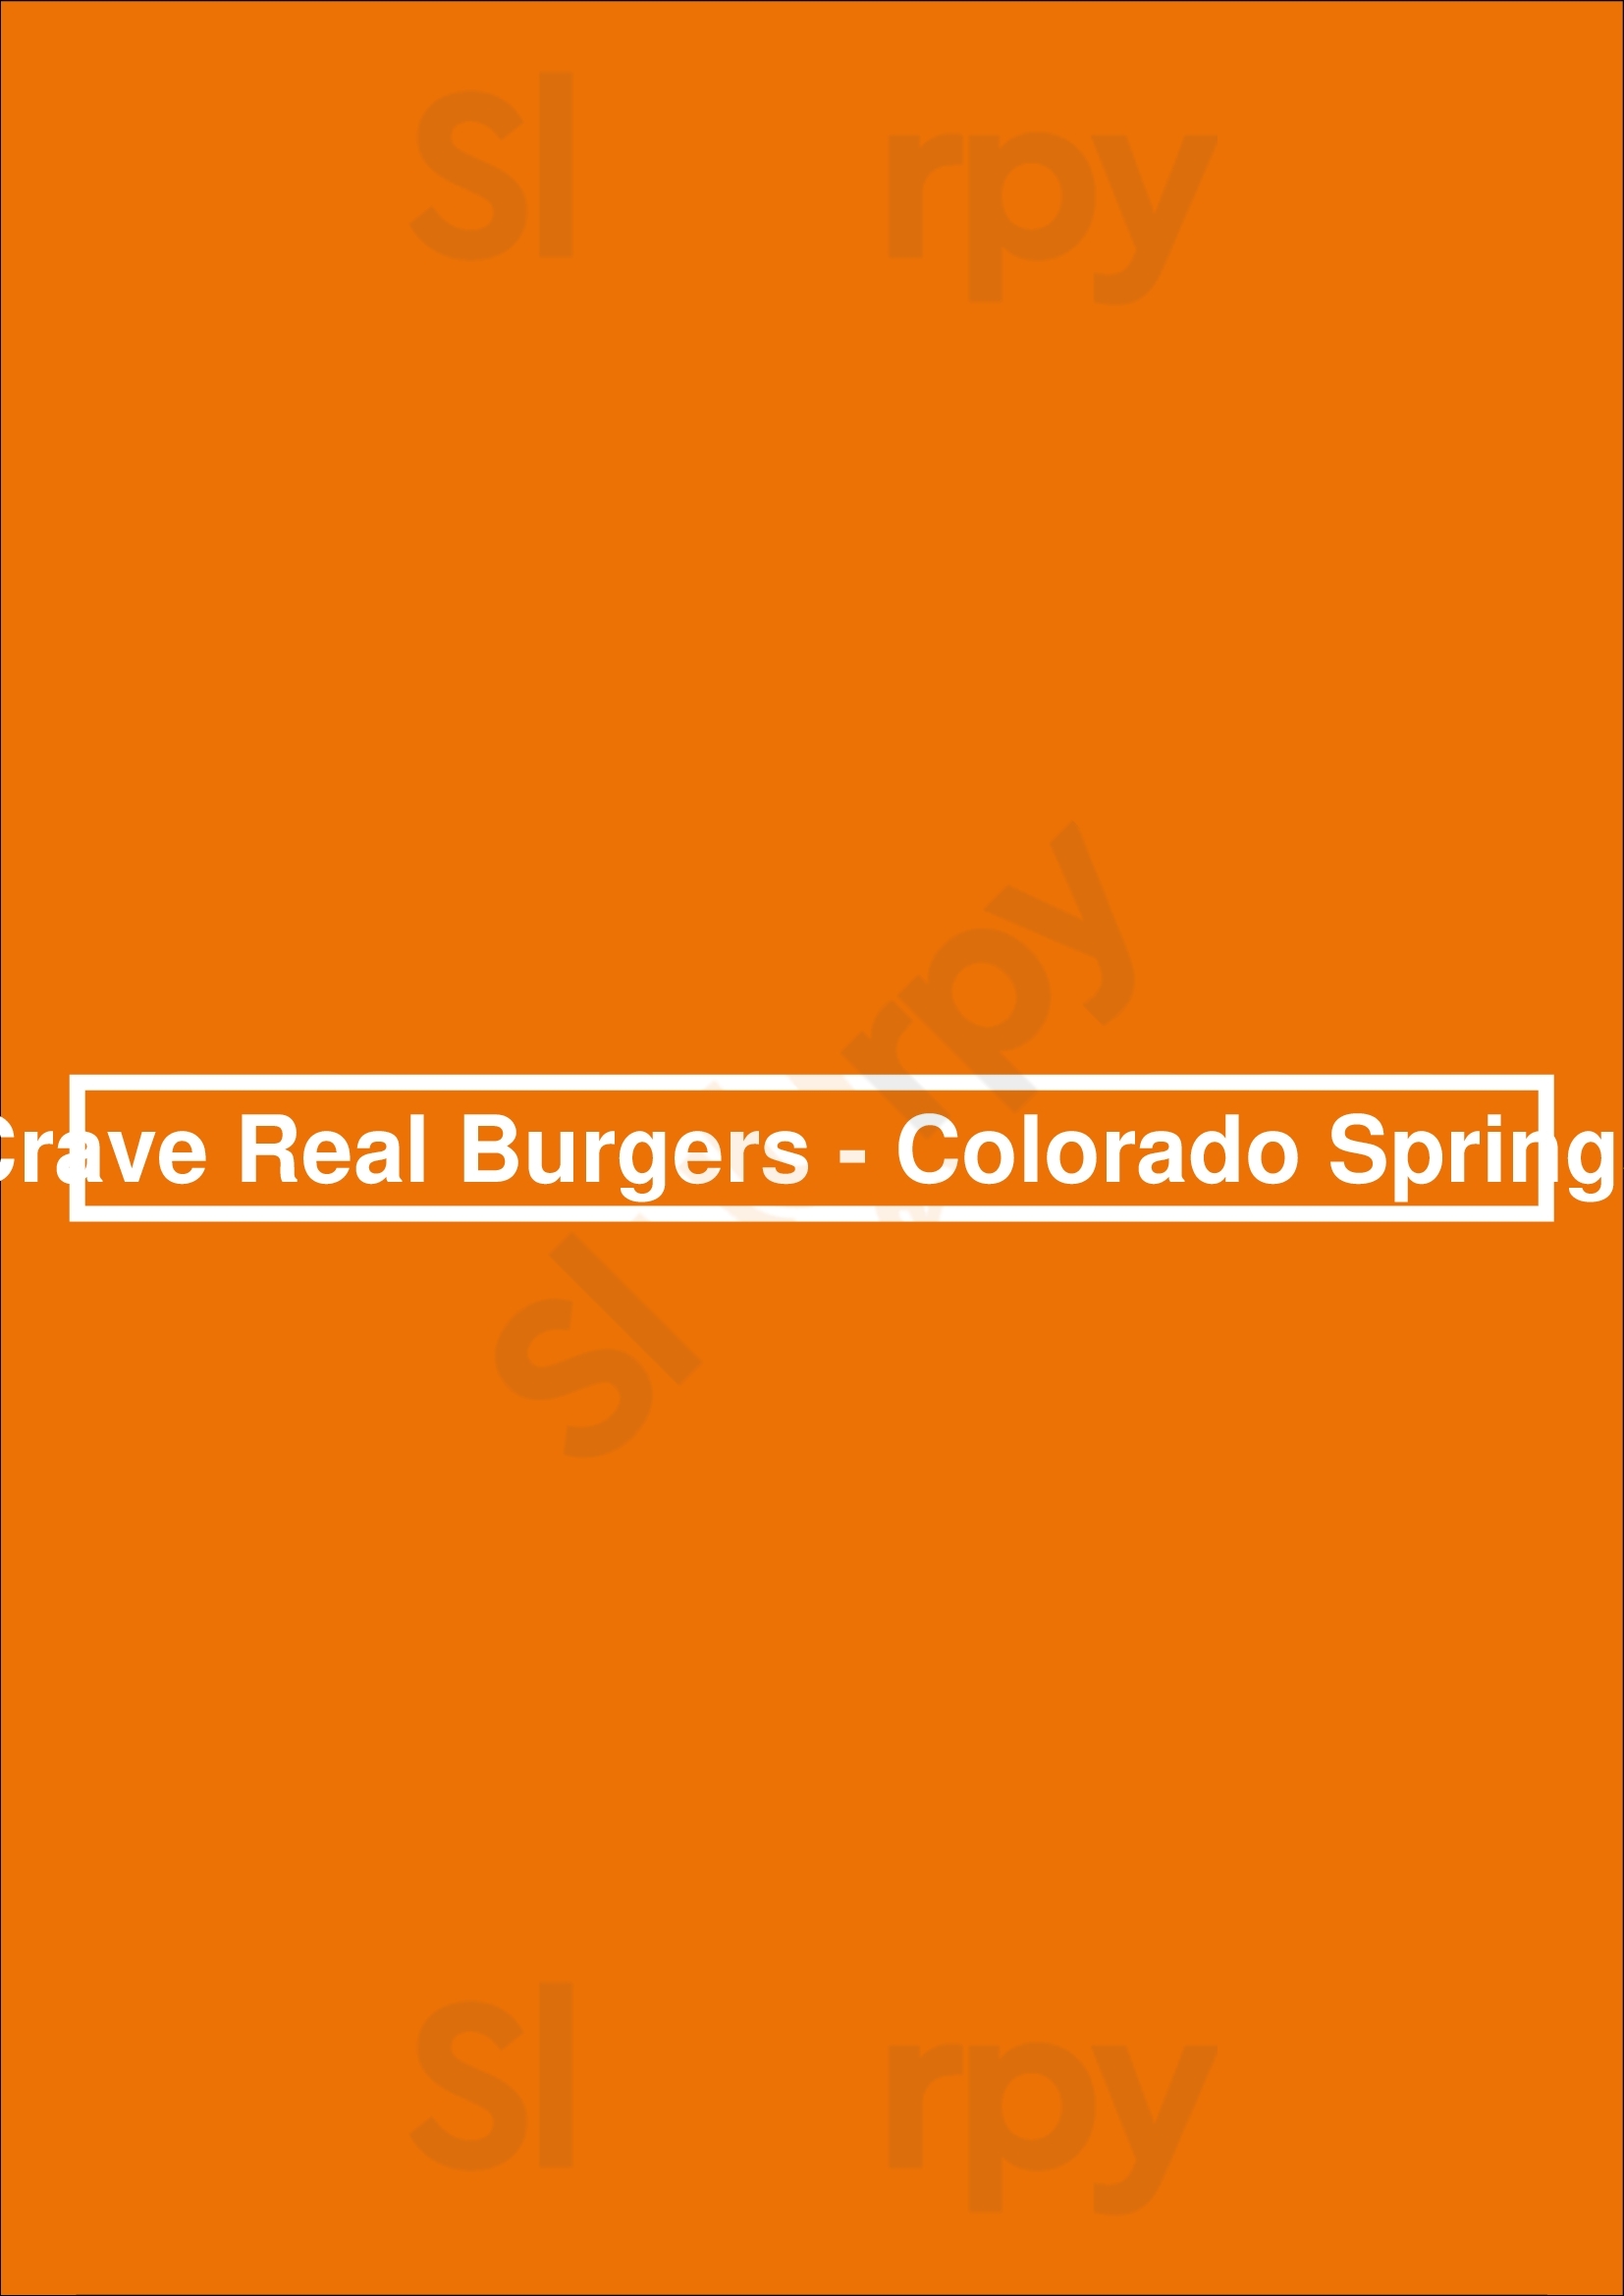 Crave Real Burgers - Colorado Springs Colorado Springs Menu - 1